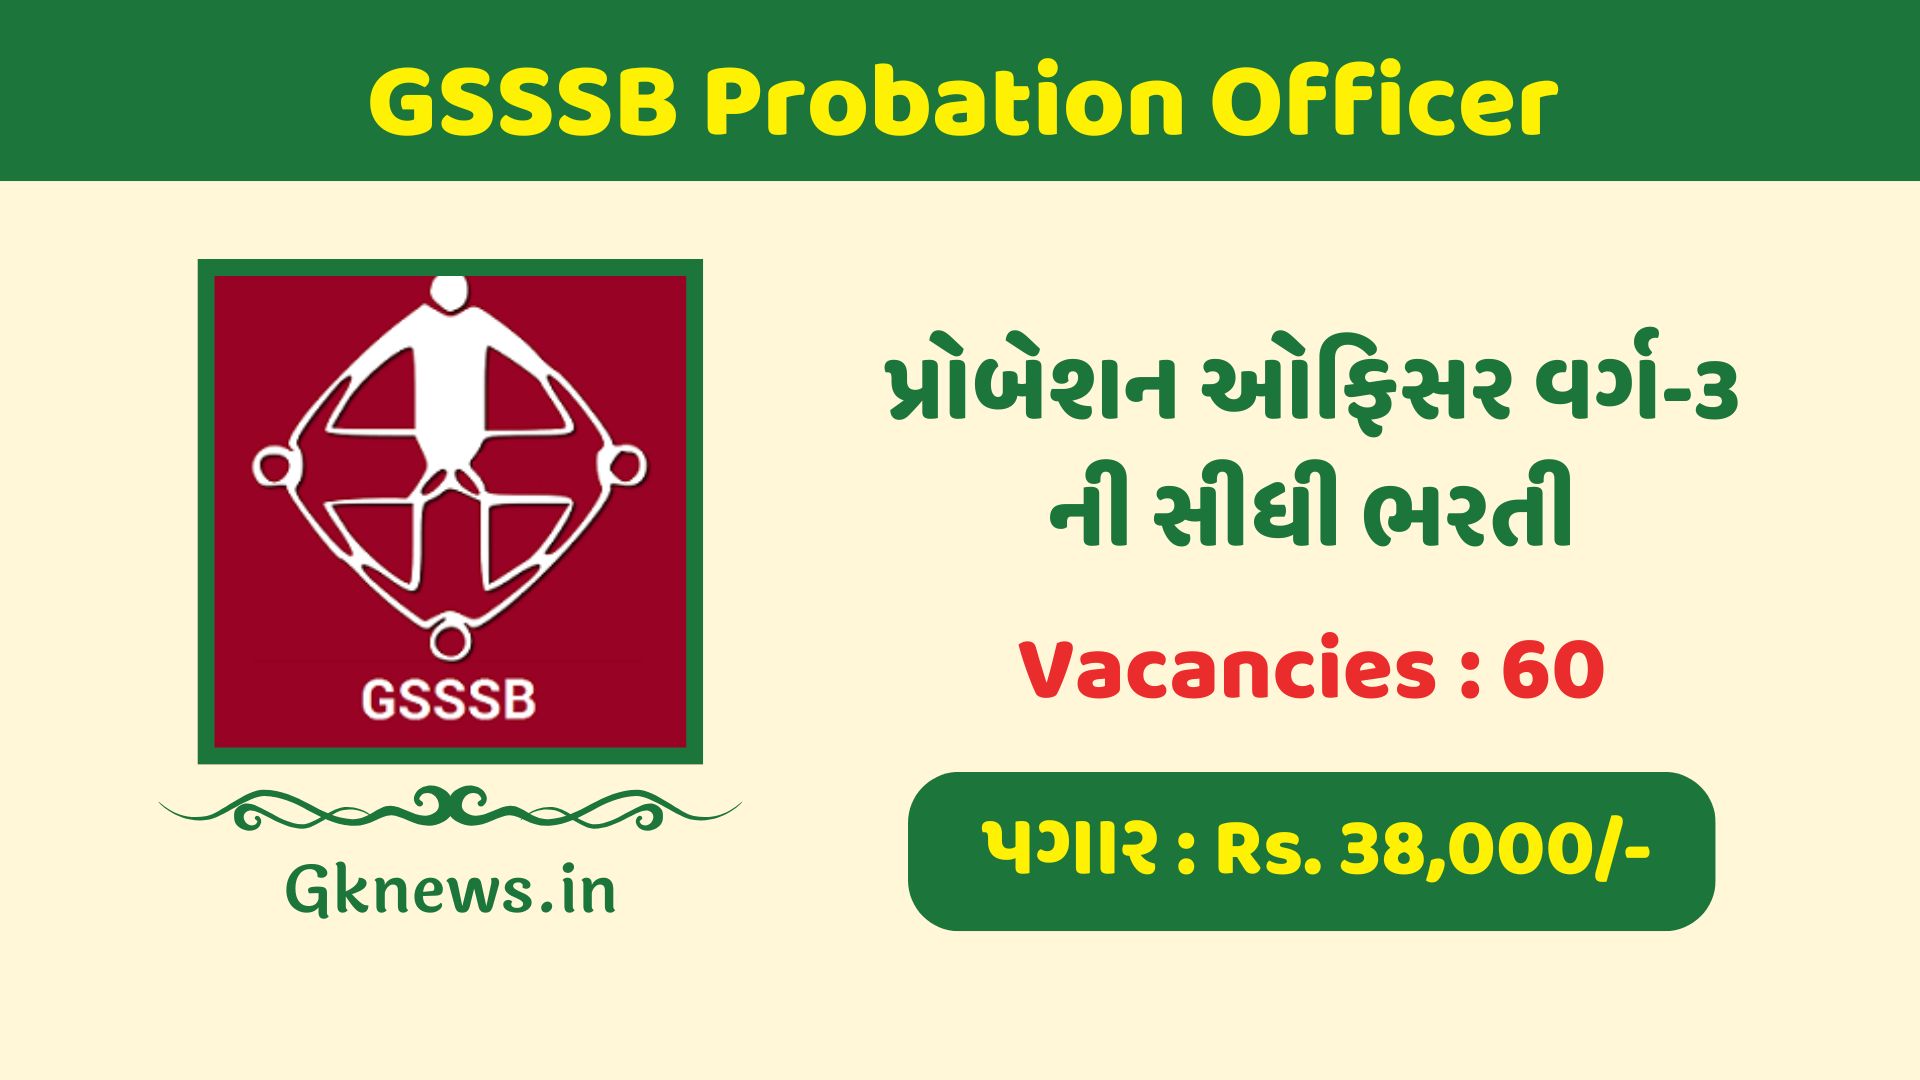 GSSSB Probation Officer